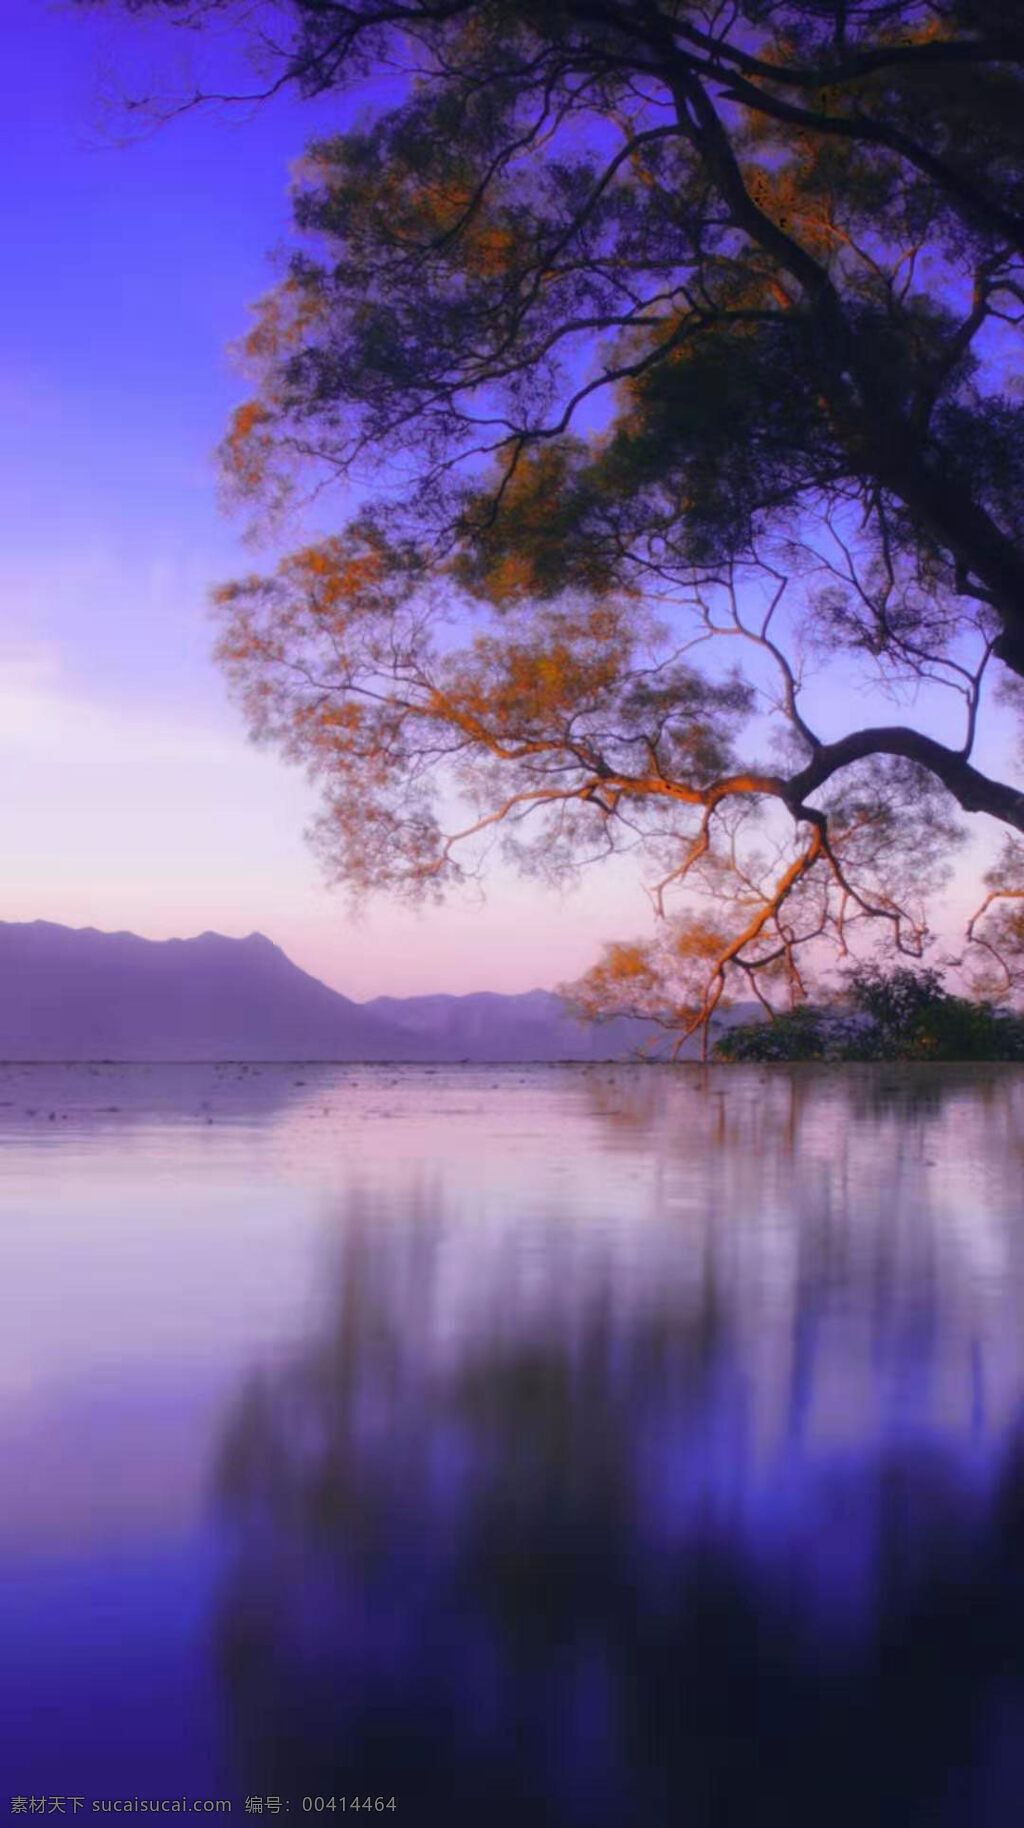 美不胜收 湖泊 风景 图 湛蓝的天空 远山 山脉 清澈的湖水 平静的湖水 大树 美丽的湖泊 高清壁纸 自然景观 山水风景